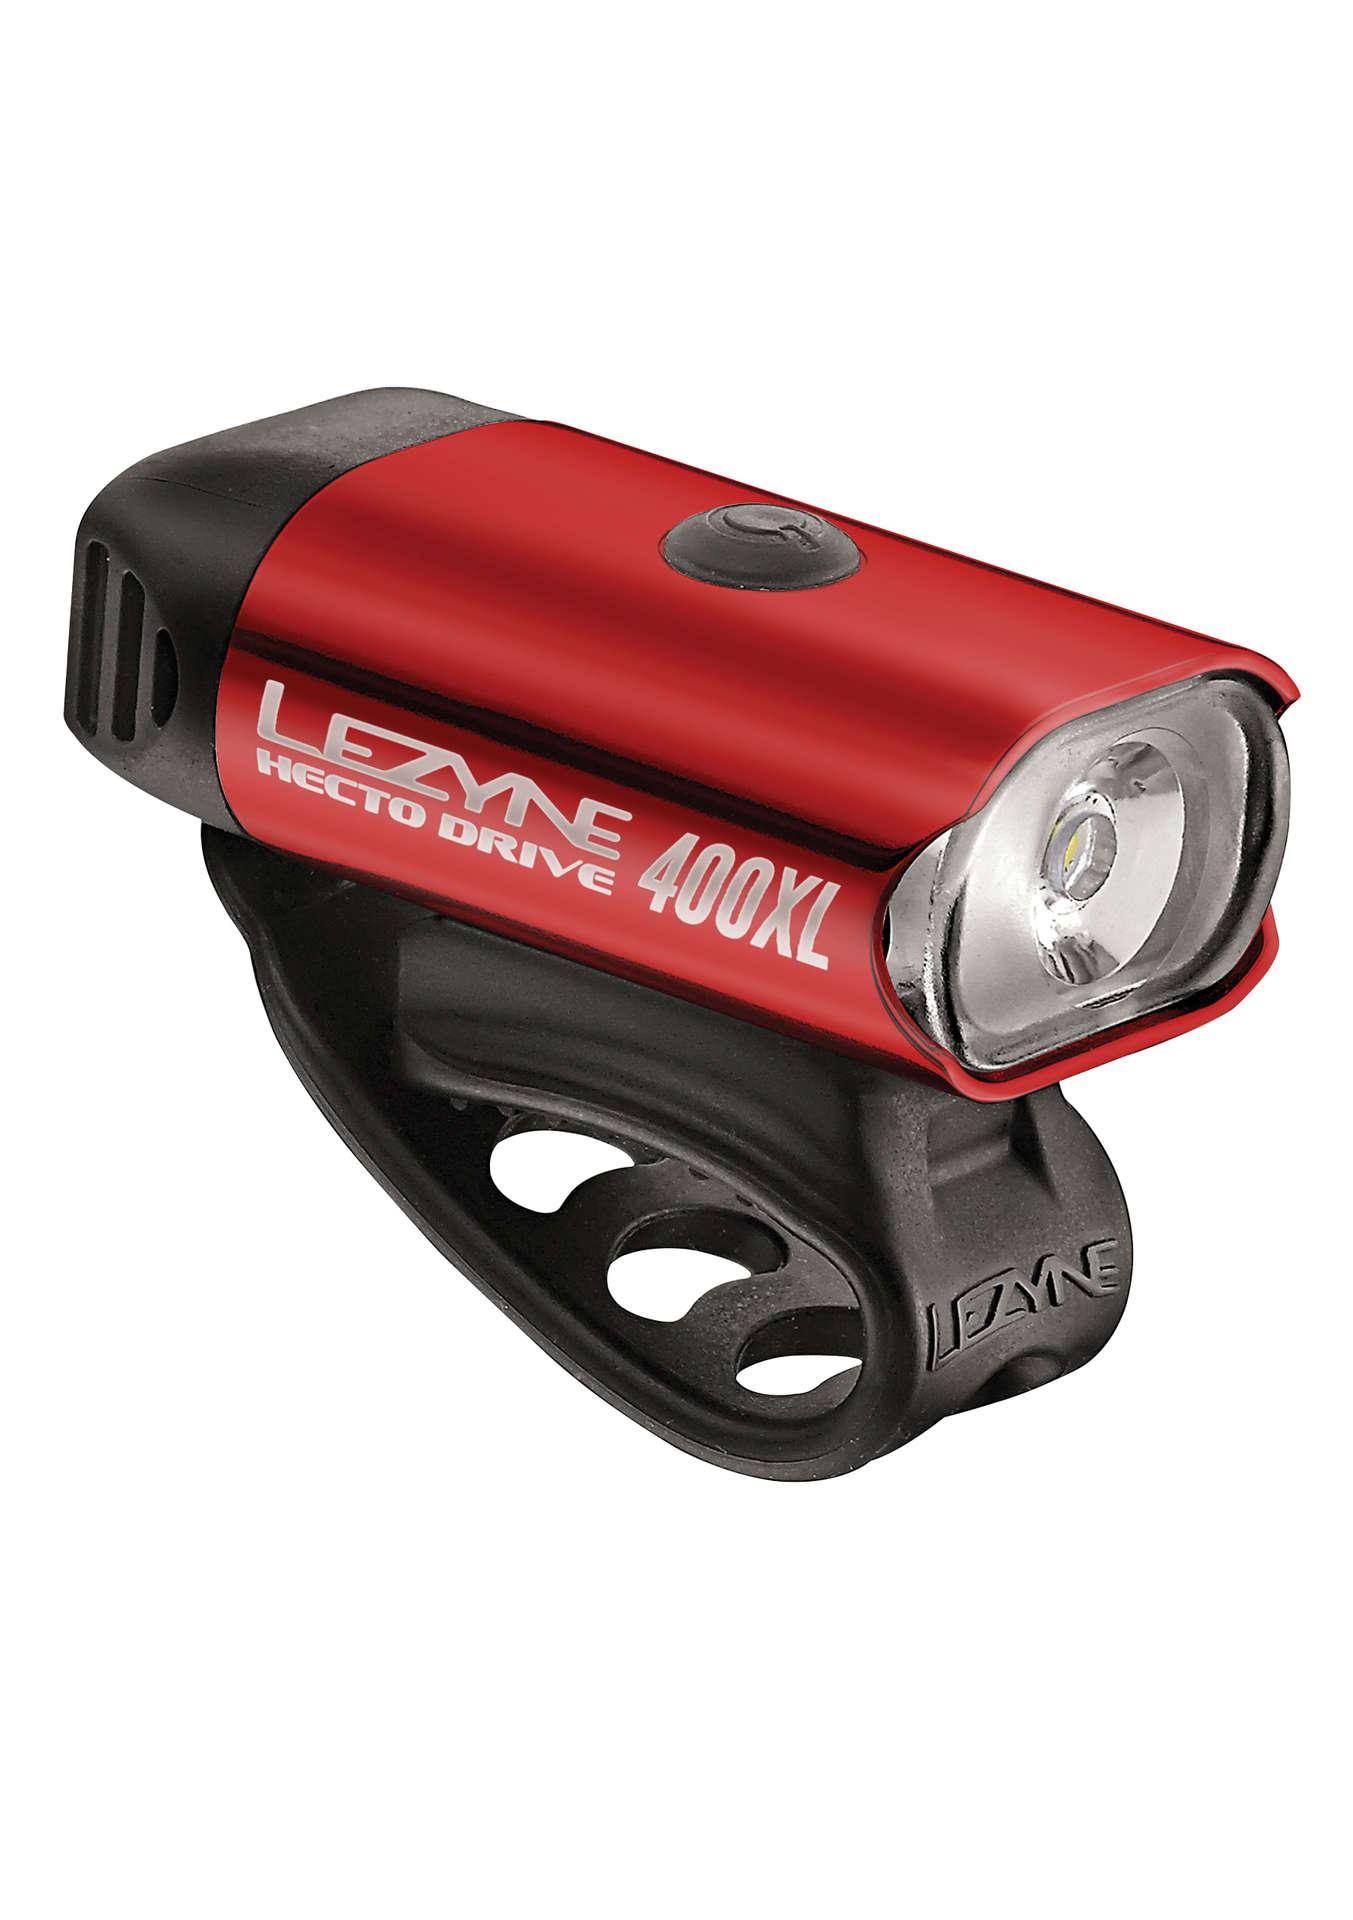 Lezyne Hecto Drive 400XL Headlight - Gloss Red